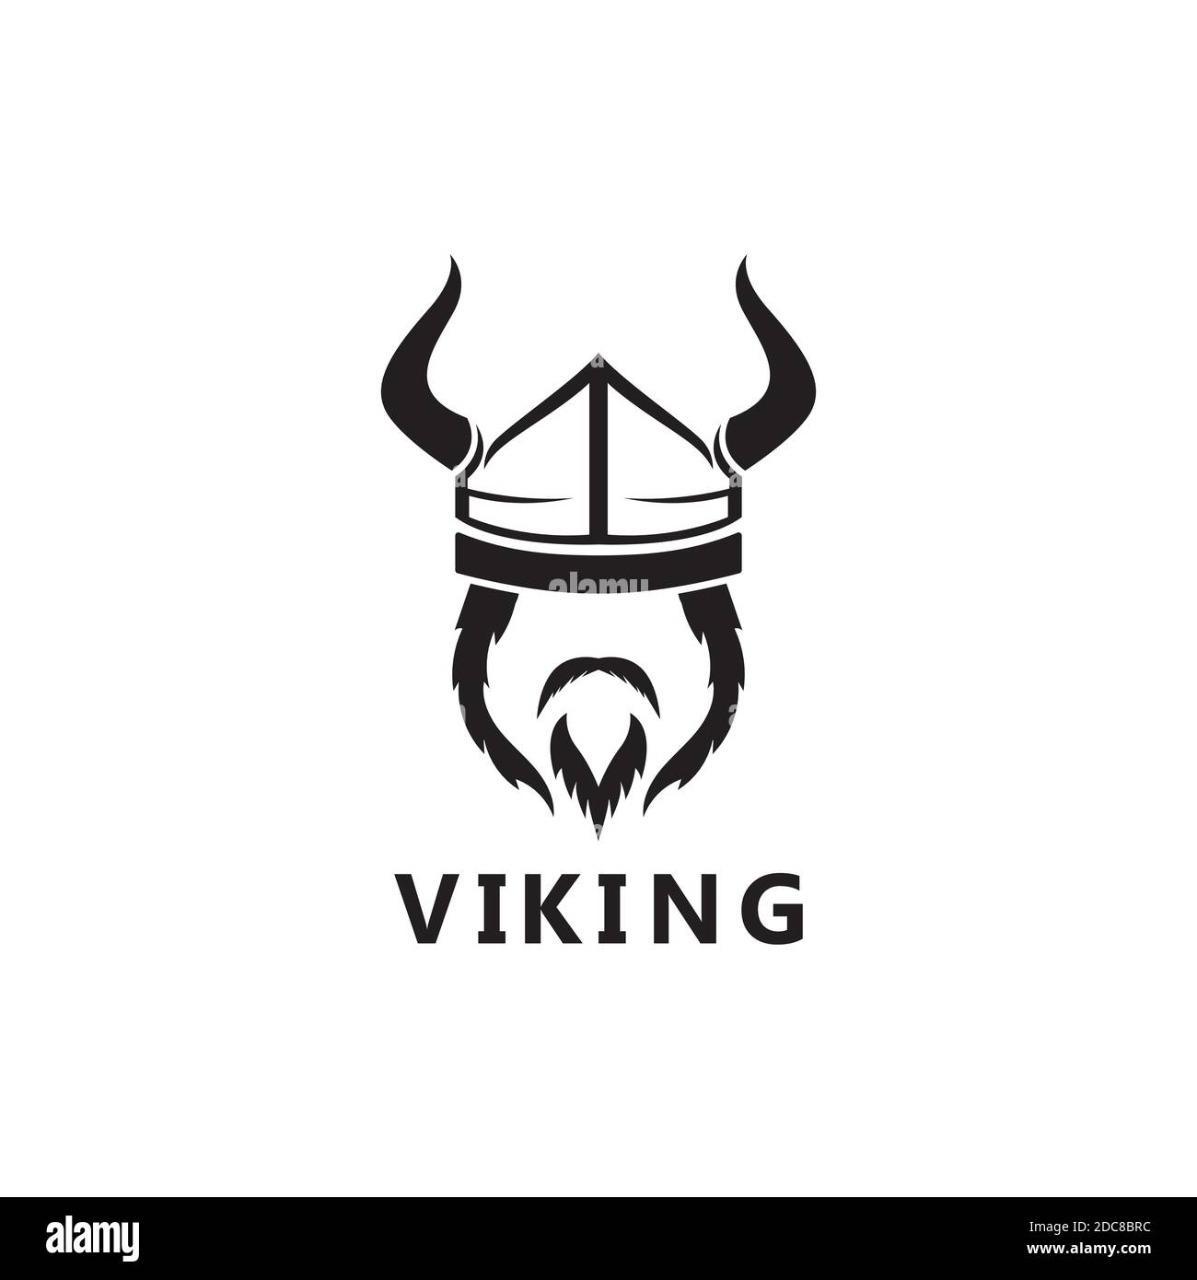 Vikingo95?s=h03qbut35wfkwa0+i6hjhw4jp9ongcg5w6f6ojvd6xy=